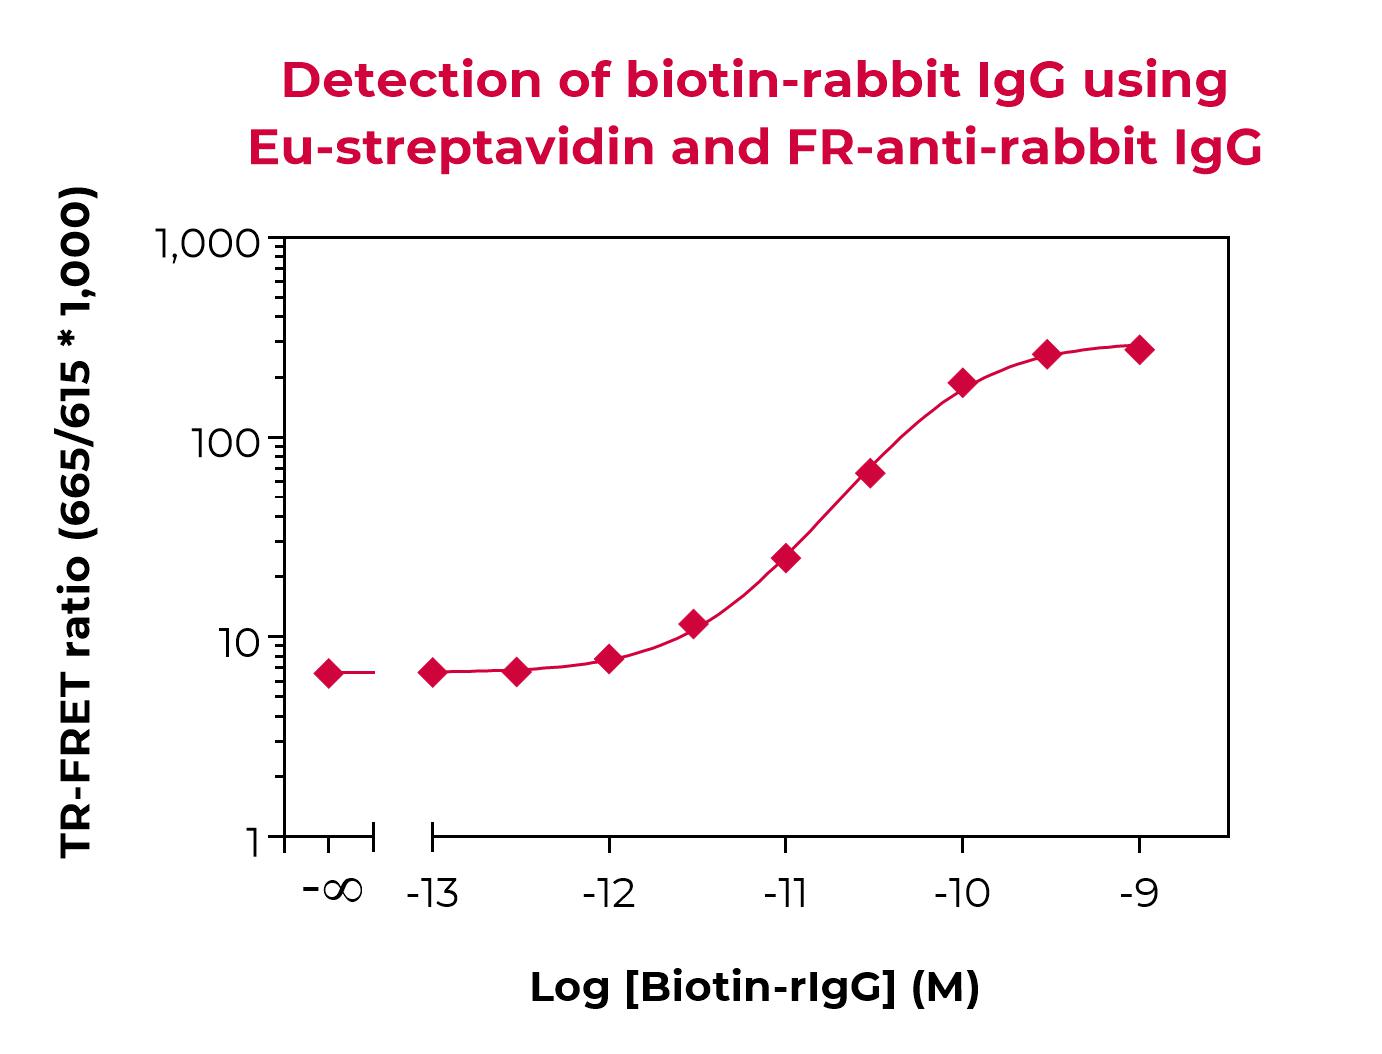 FR-anti-rabbit IgG validation